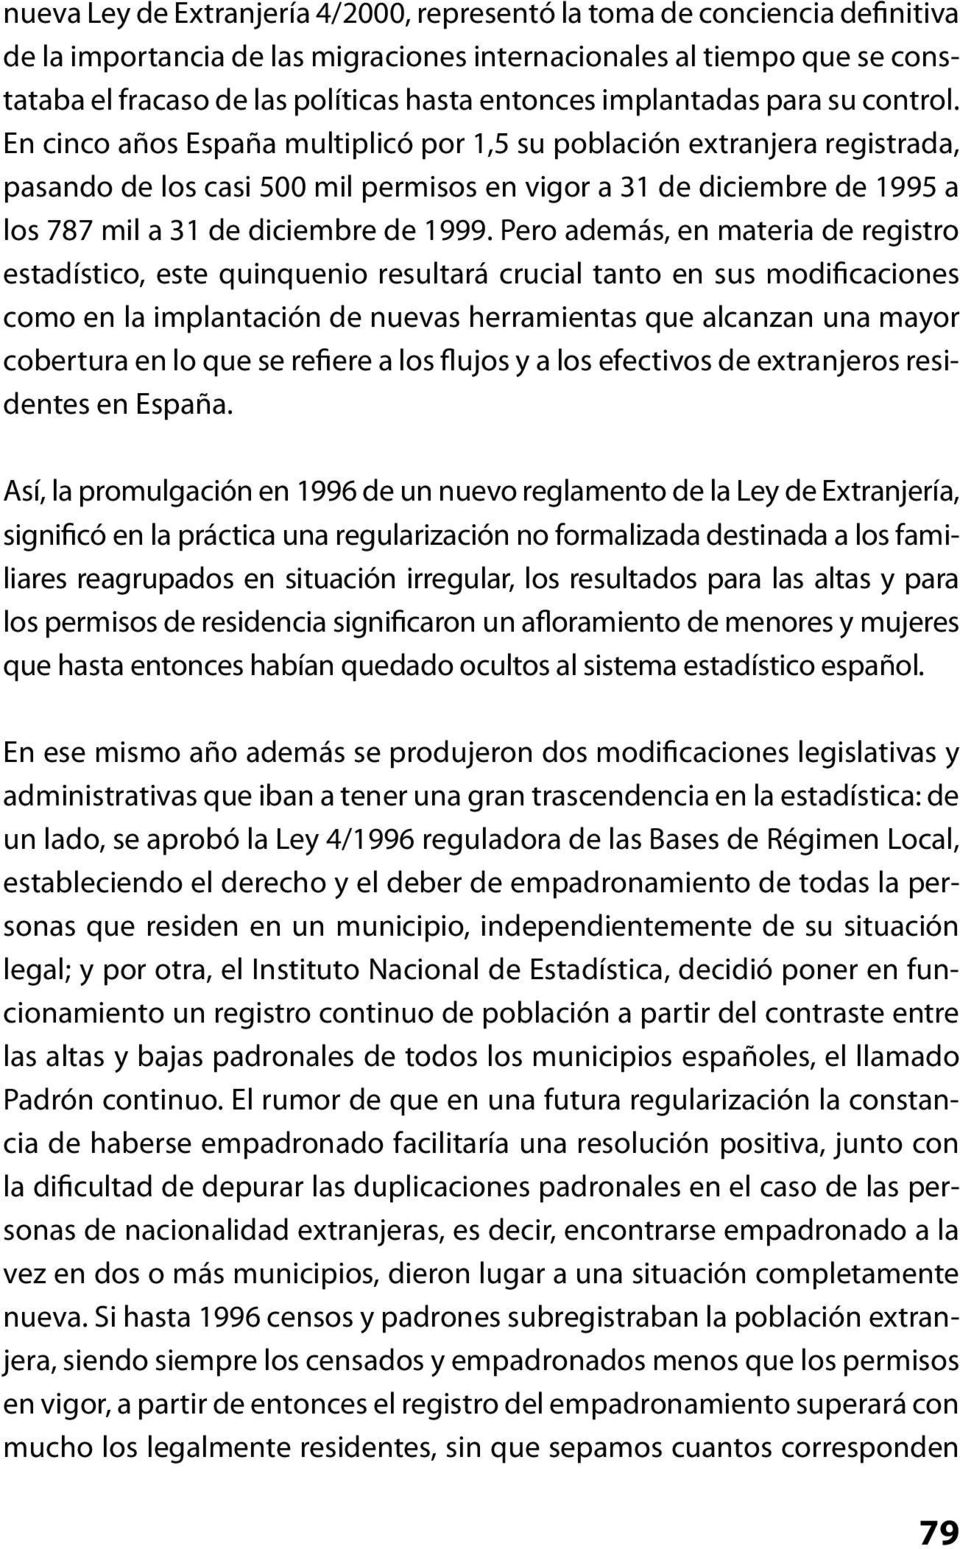 En cinco años España multiplicó por 1,5 su población extranjera registrada, pasando de los casi 500 mil permisos en vigor a 31 de diciembre de 1995 a los 787 mil a 31 de diciembre de 1999.